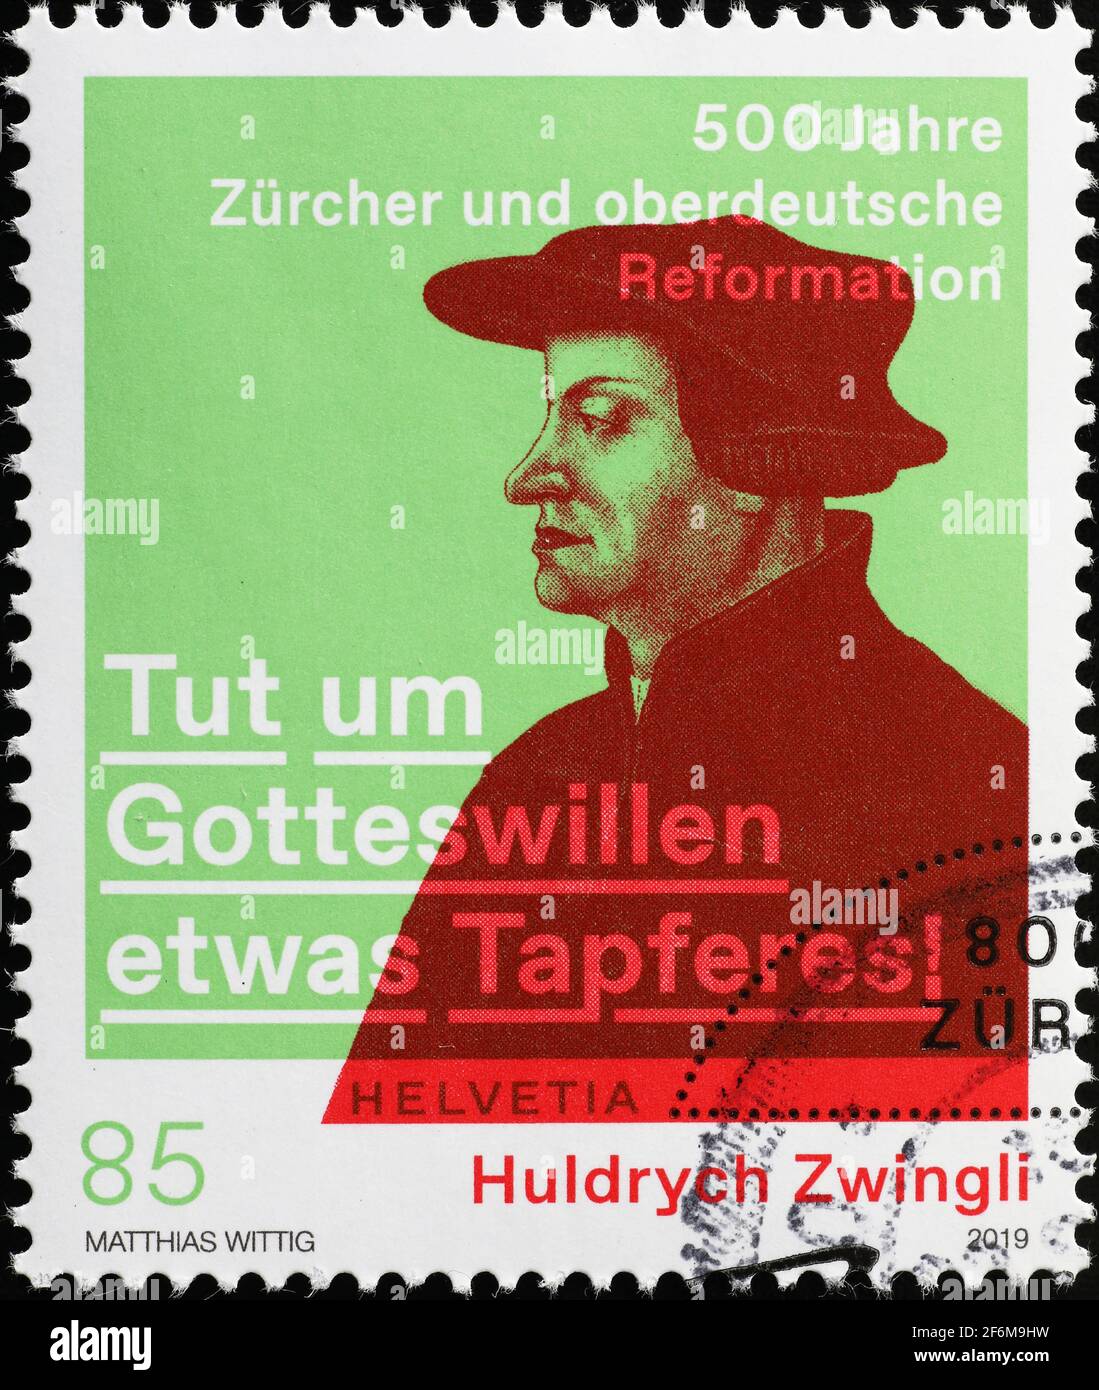 Huldrych Zwingli Porträt auf schweizer Briefmarke Stockfoto